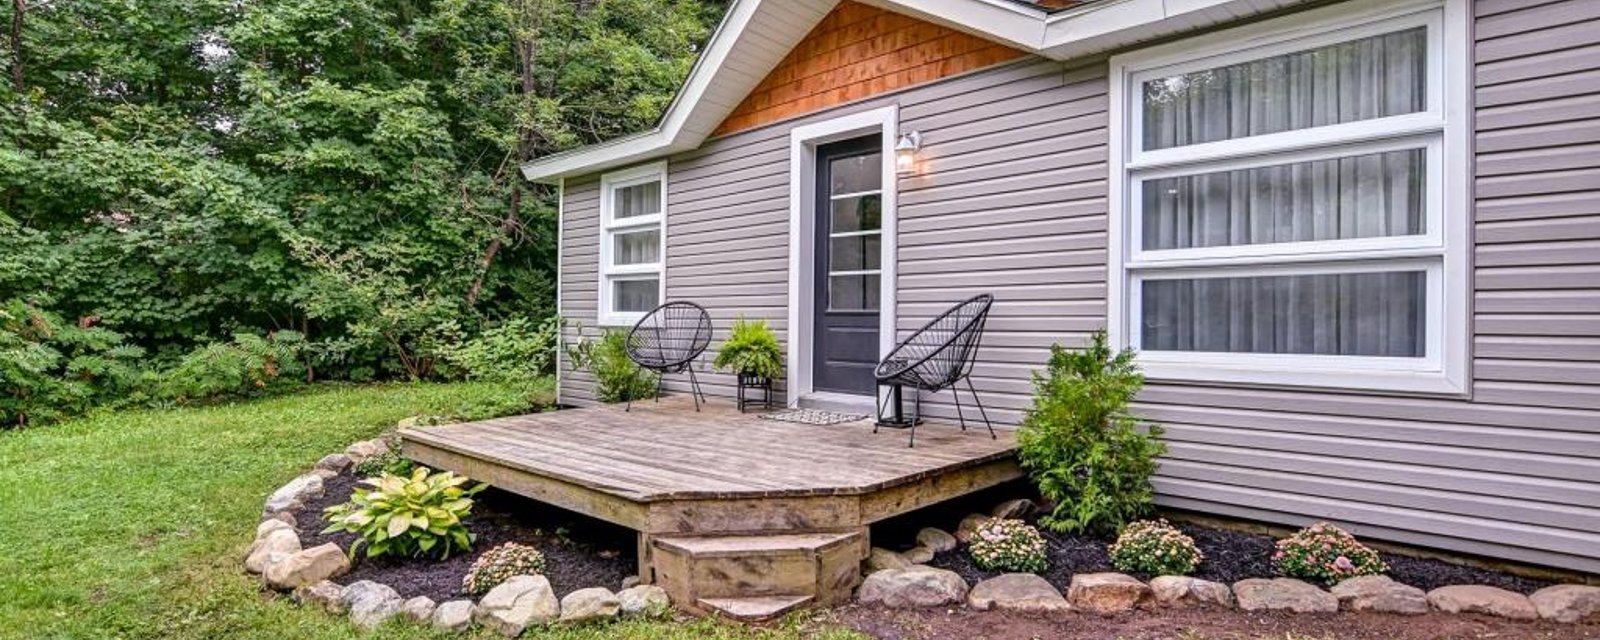 Petit cottage superbement rénové à 219 000$: une belle aubaine à moins d'1 hr de Montréal